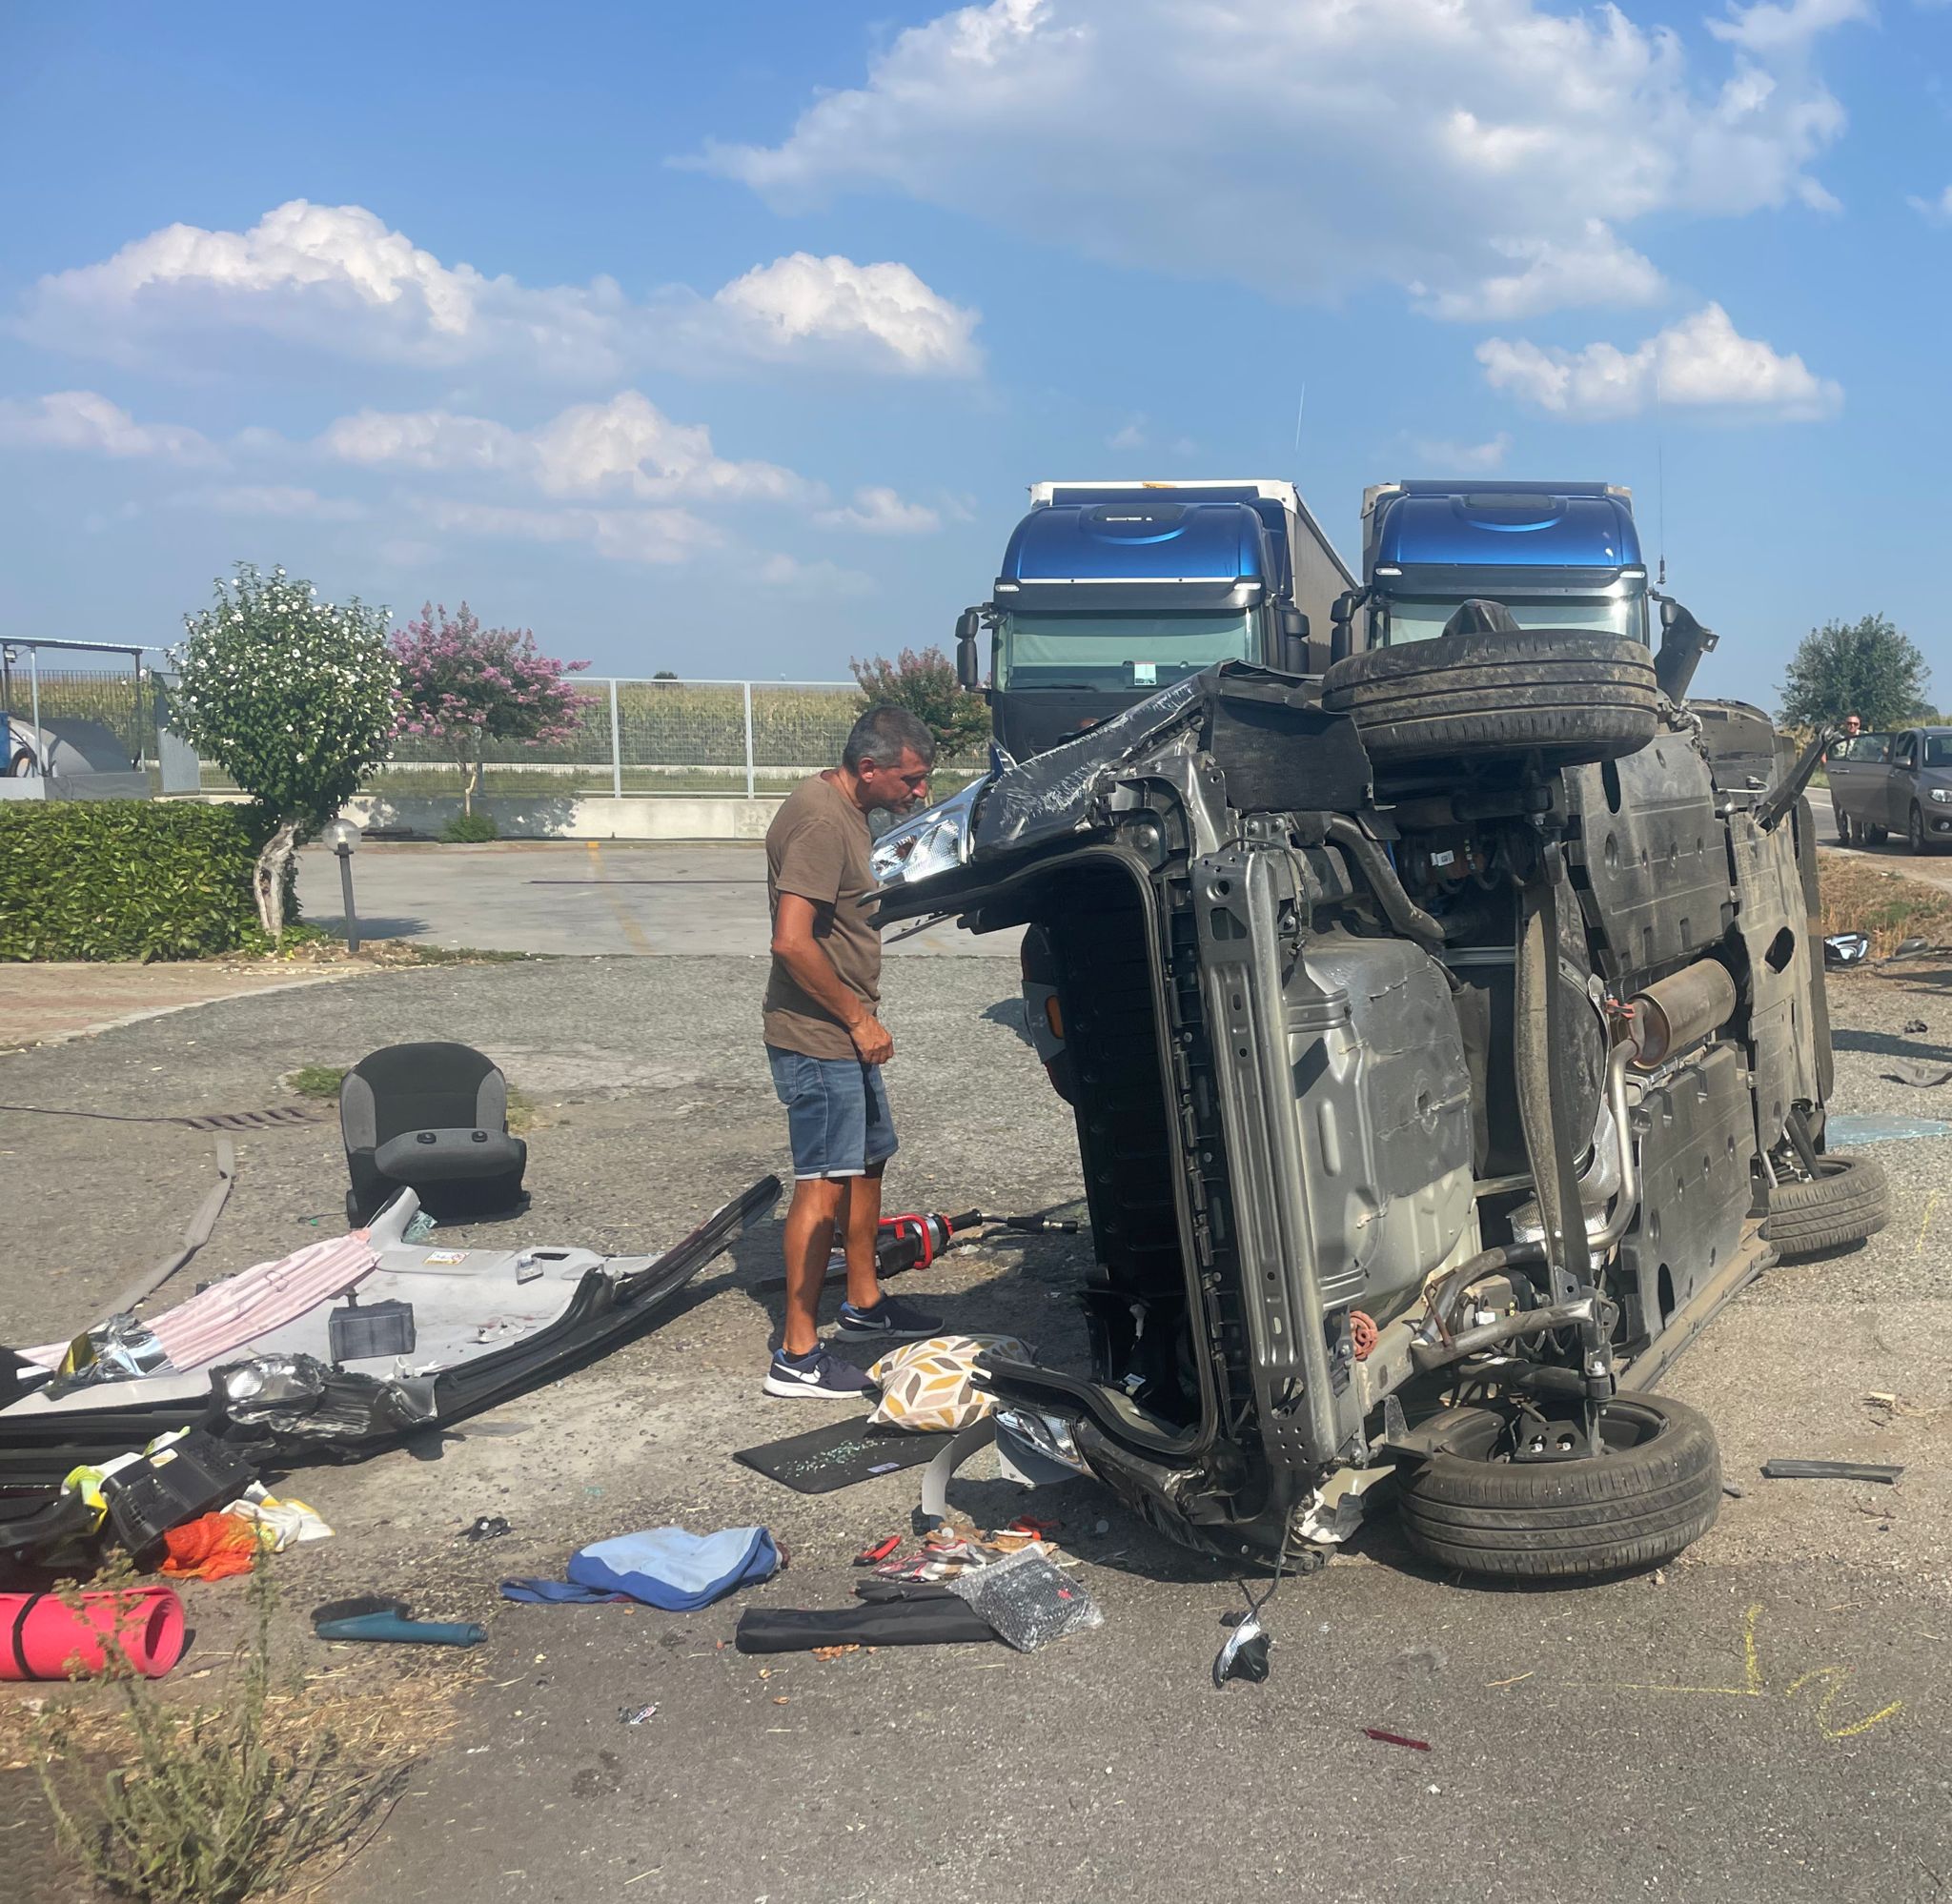 CARMAGNOLA – Incidente in via Poirino: due feriti